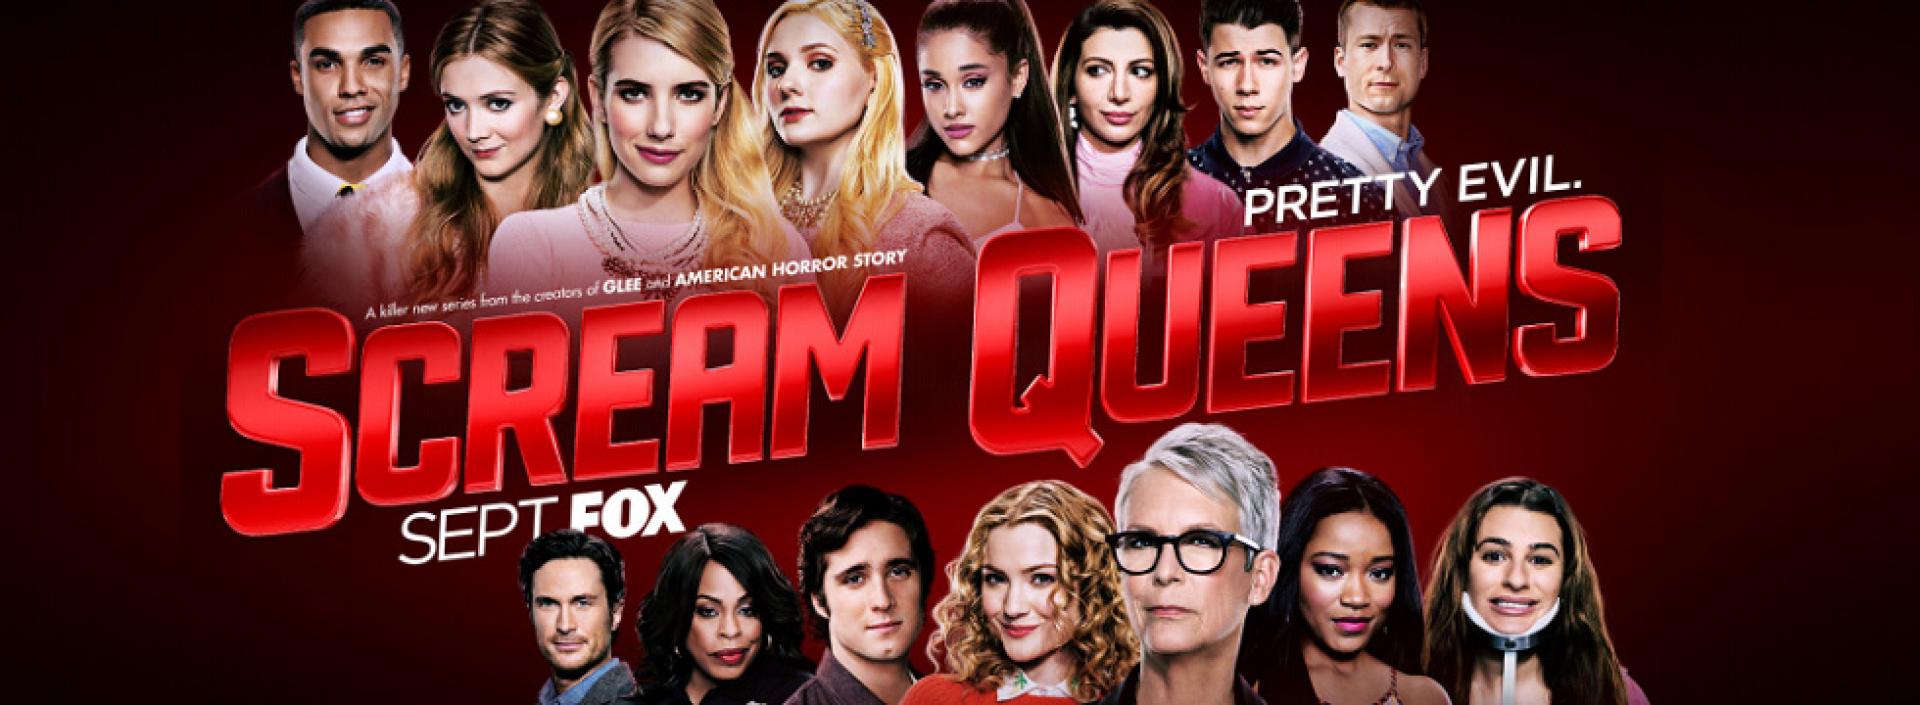 Scream Queens 1x10